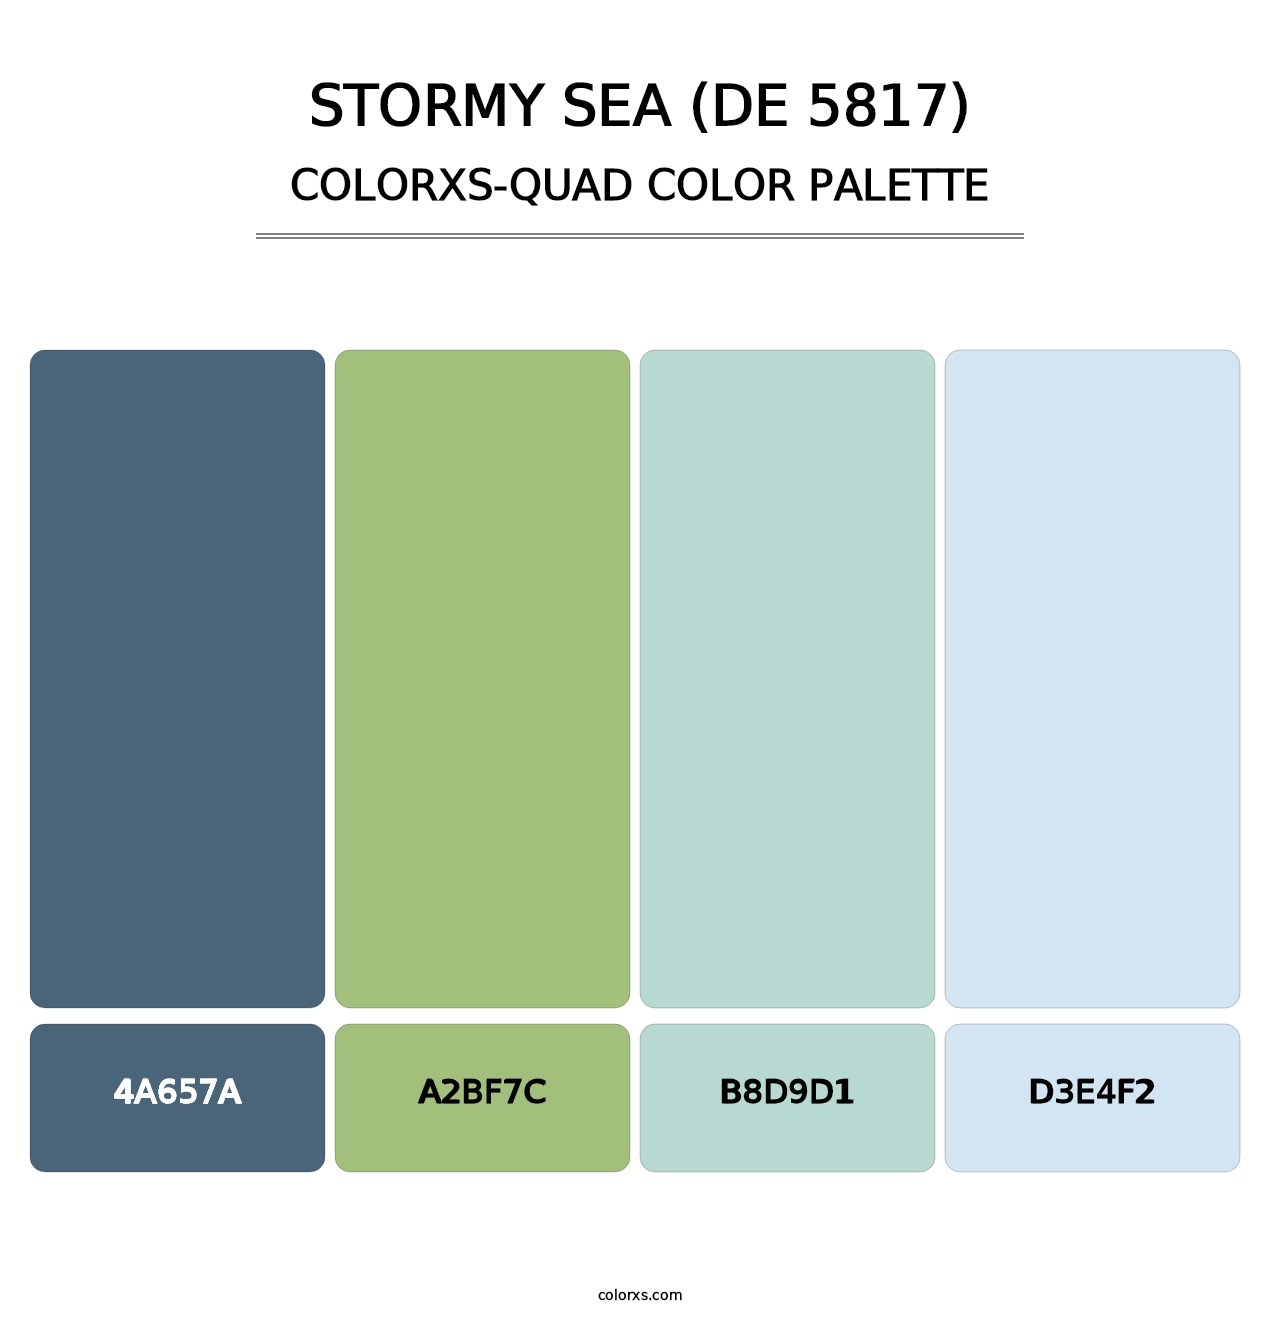 Stormy Sea (DE 5817) - Colorxs Quad Palette